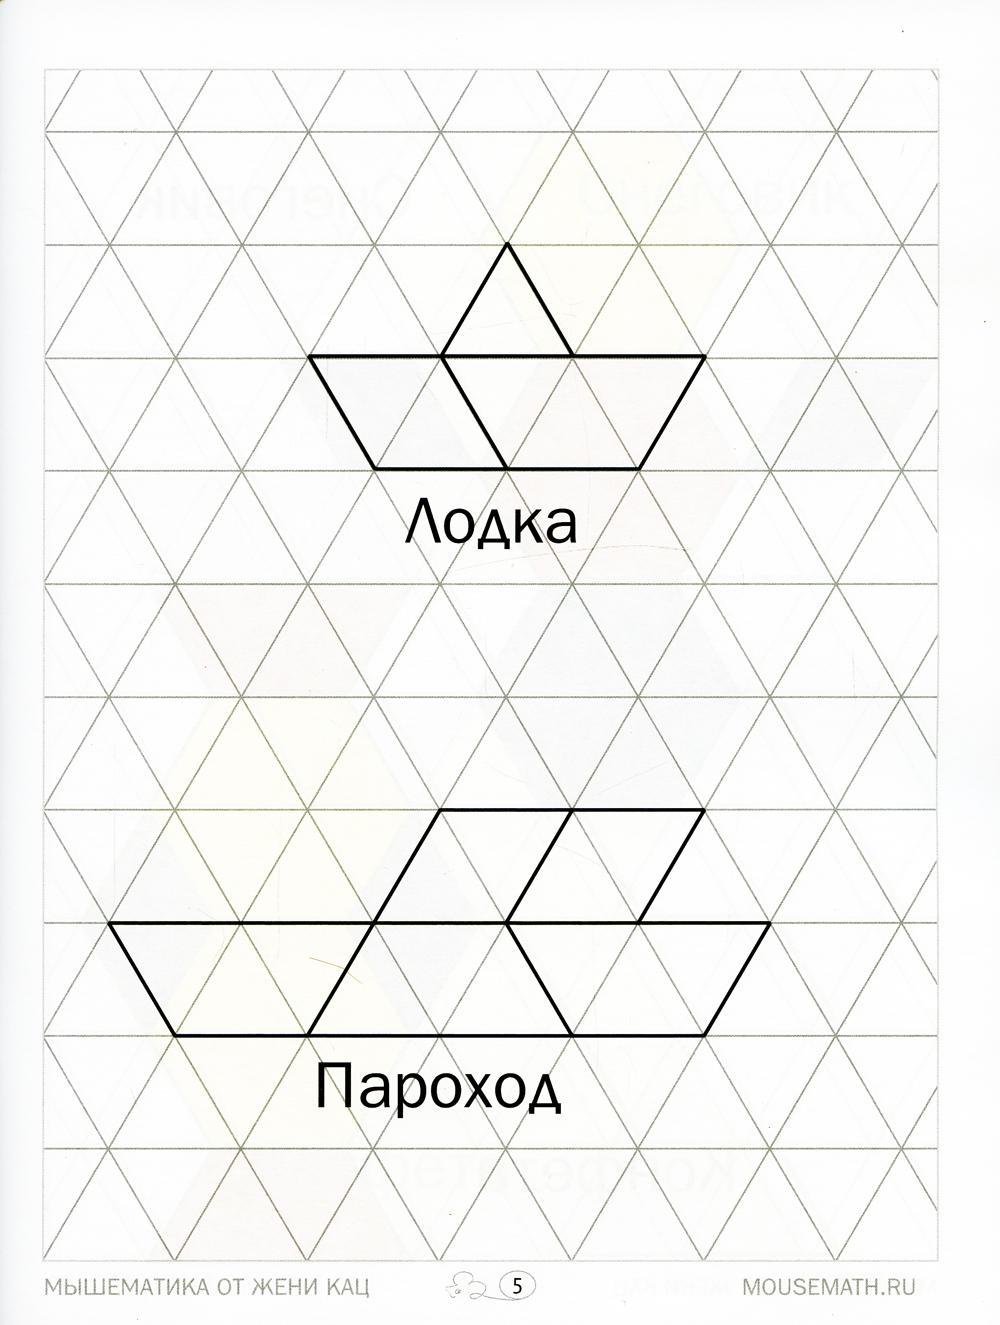 Геометрическая мозаика. Ч. 1. Сюжетные картинки. Задания для детей 4-6 лет